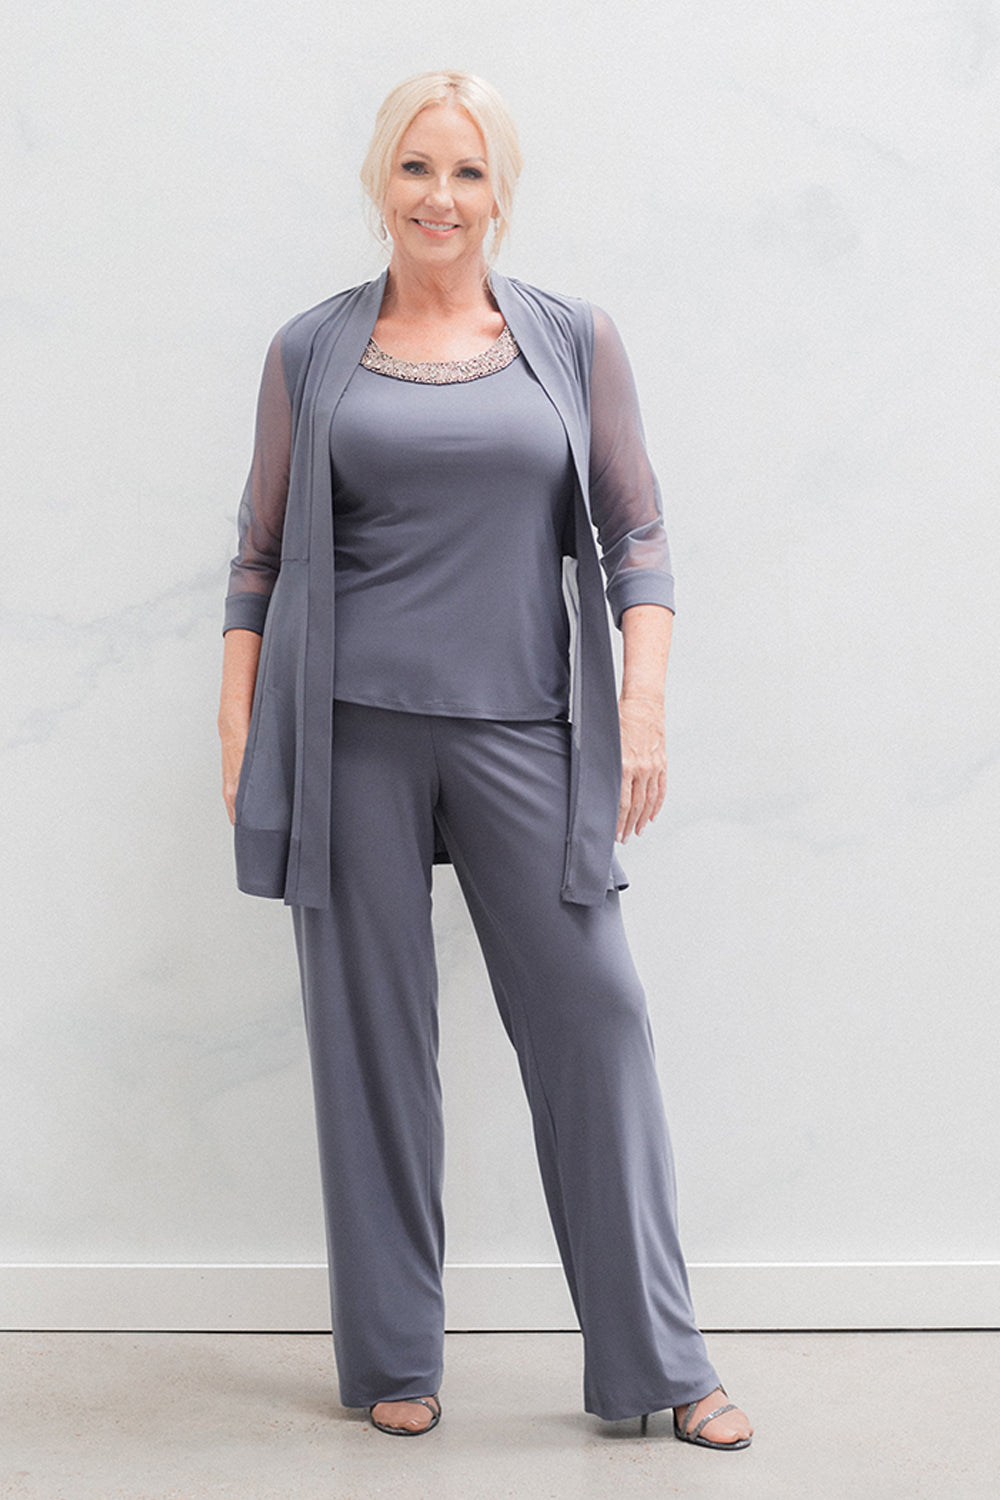 R&M Richards Women's Plus Size Beaded neck 2 Piece Pant Suit